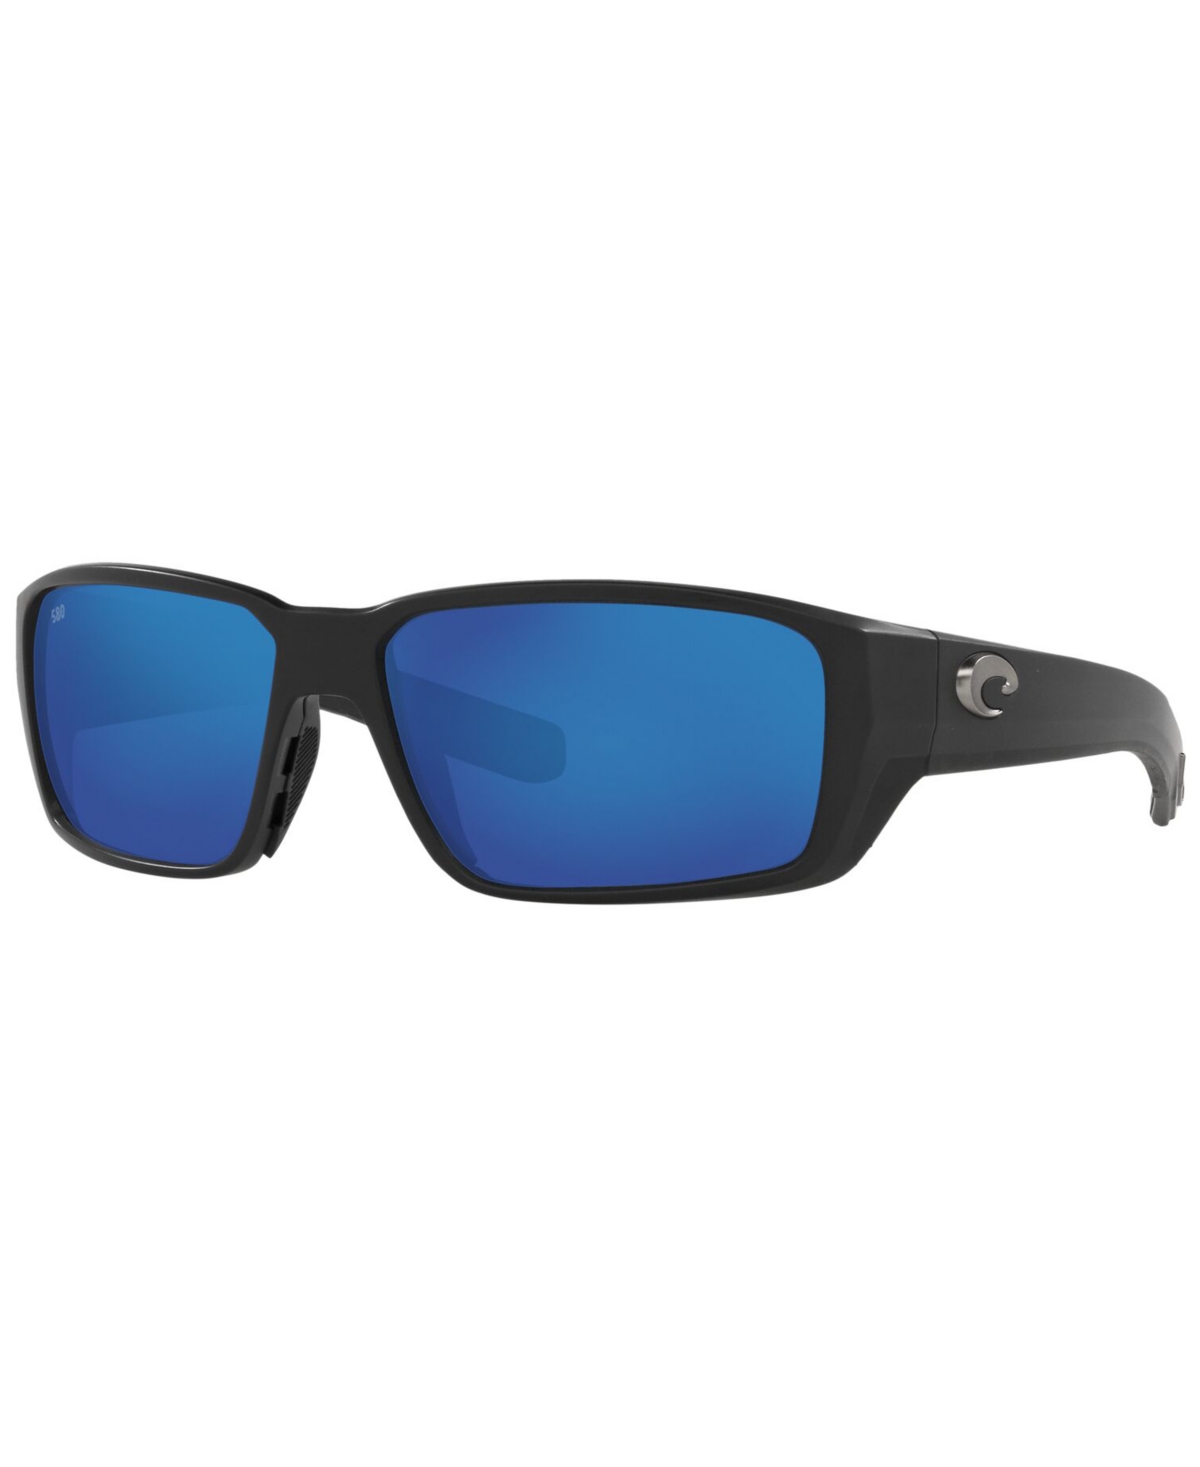 Costa Del Mar Polarized Blackfin Pro Sunglasses, 6S9078 60